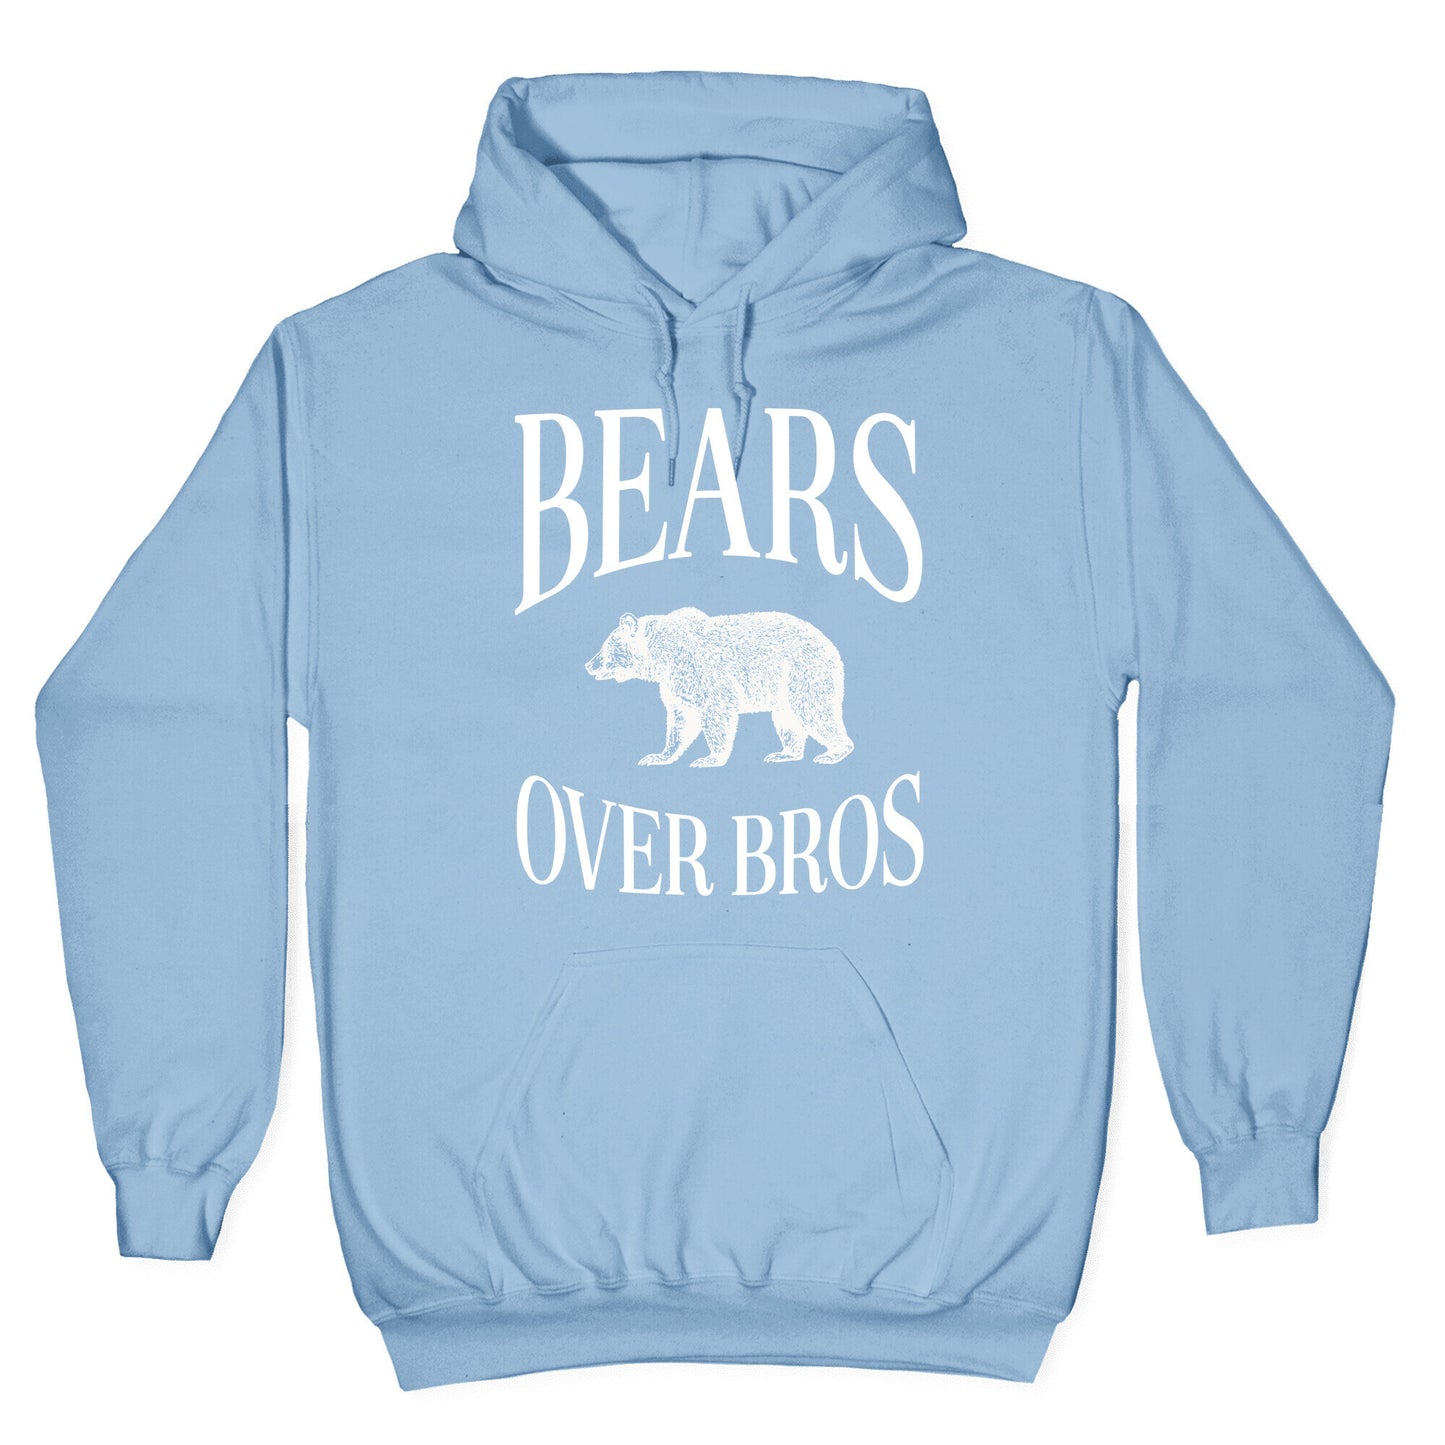 Bears Over Bros Hoodie